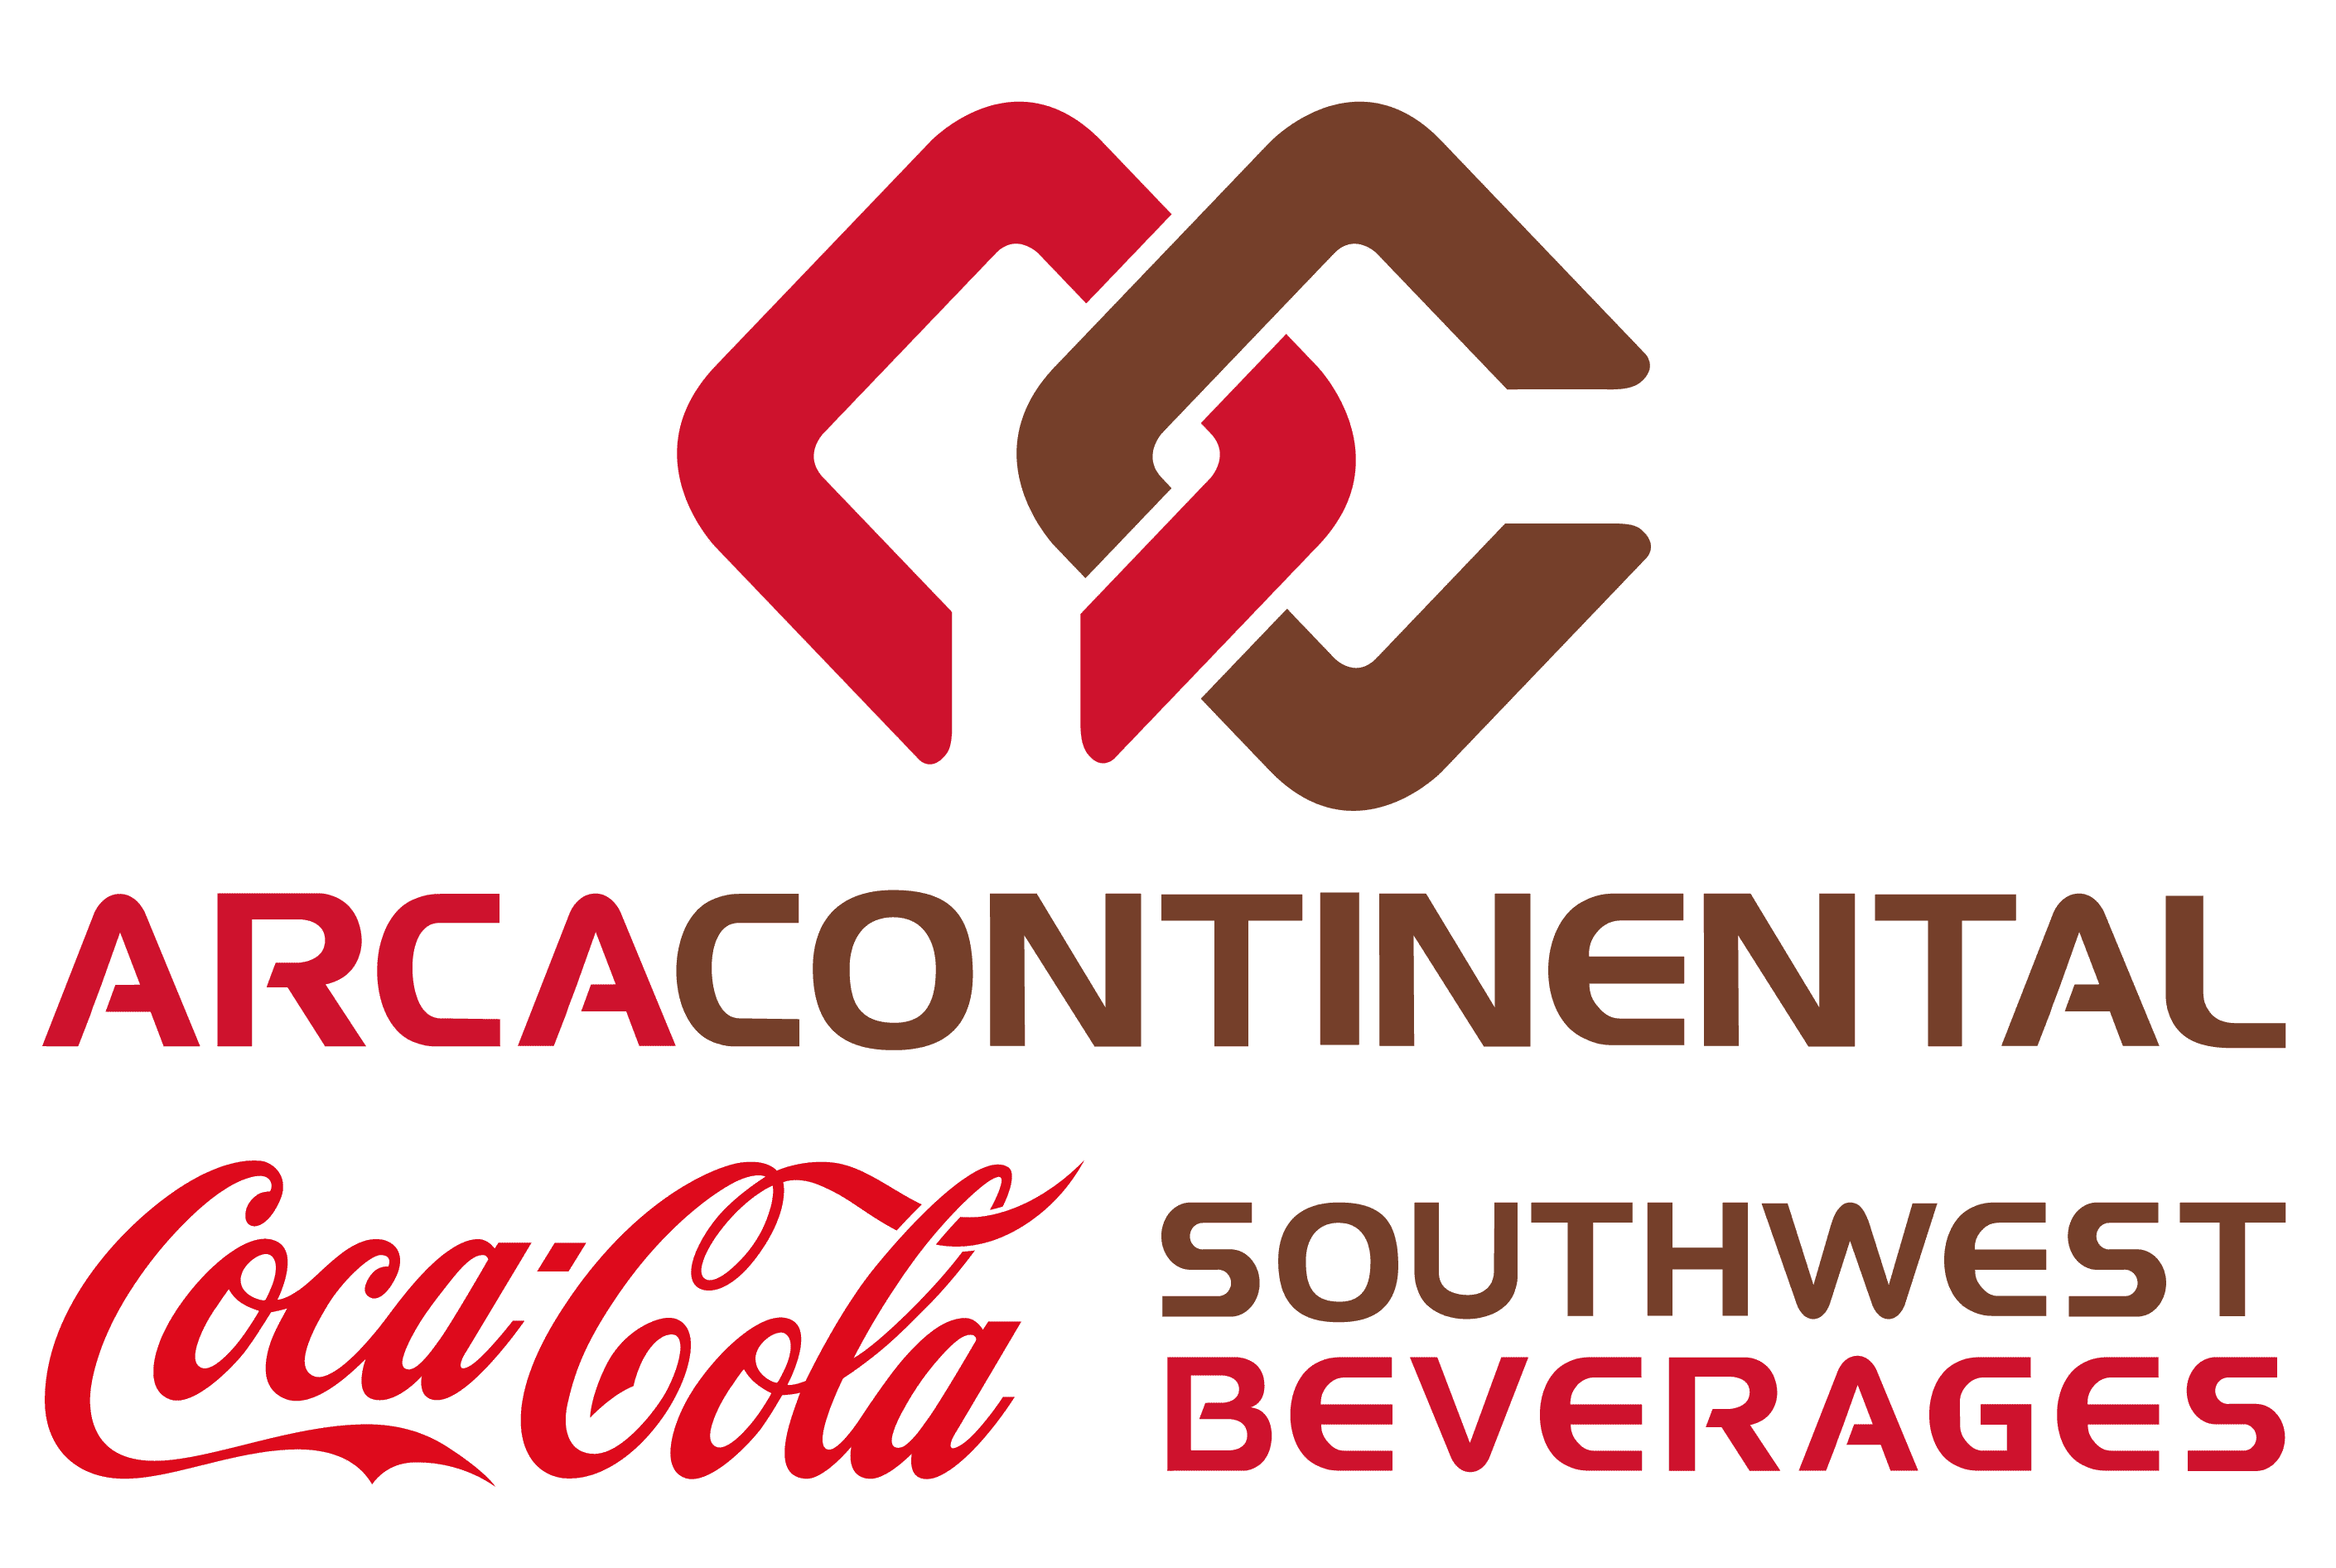 Arca Continential/Coca-Cola logo